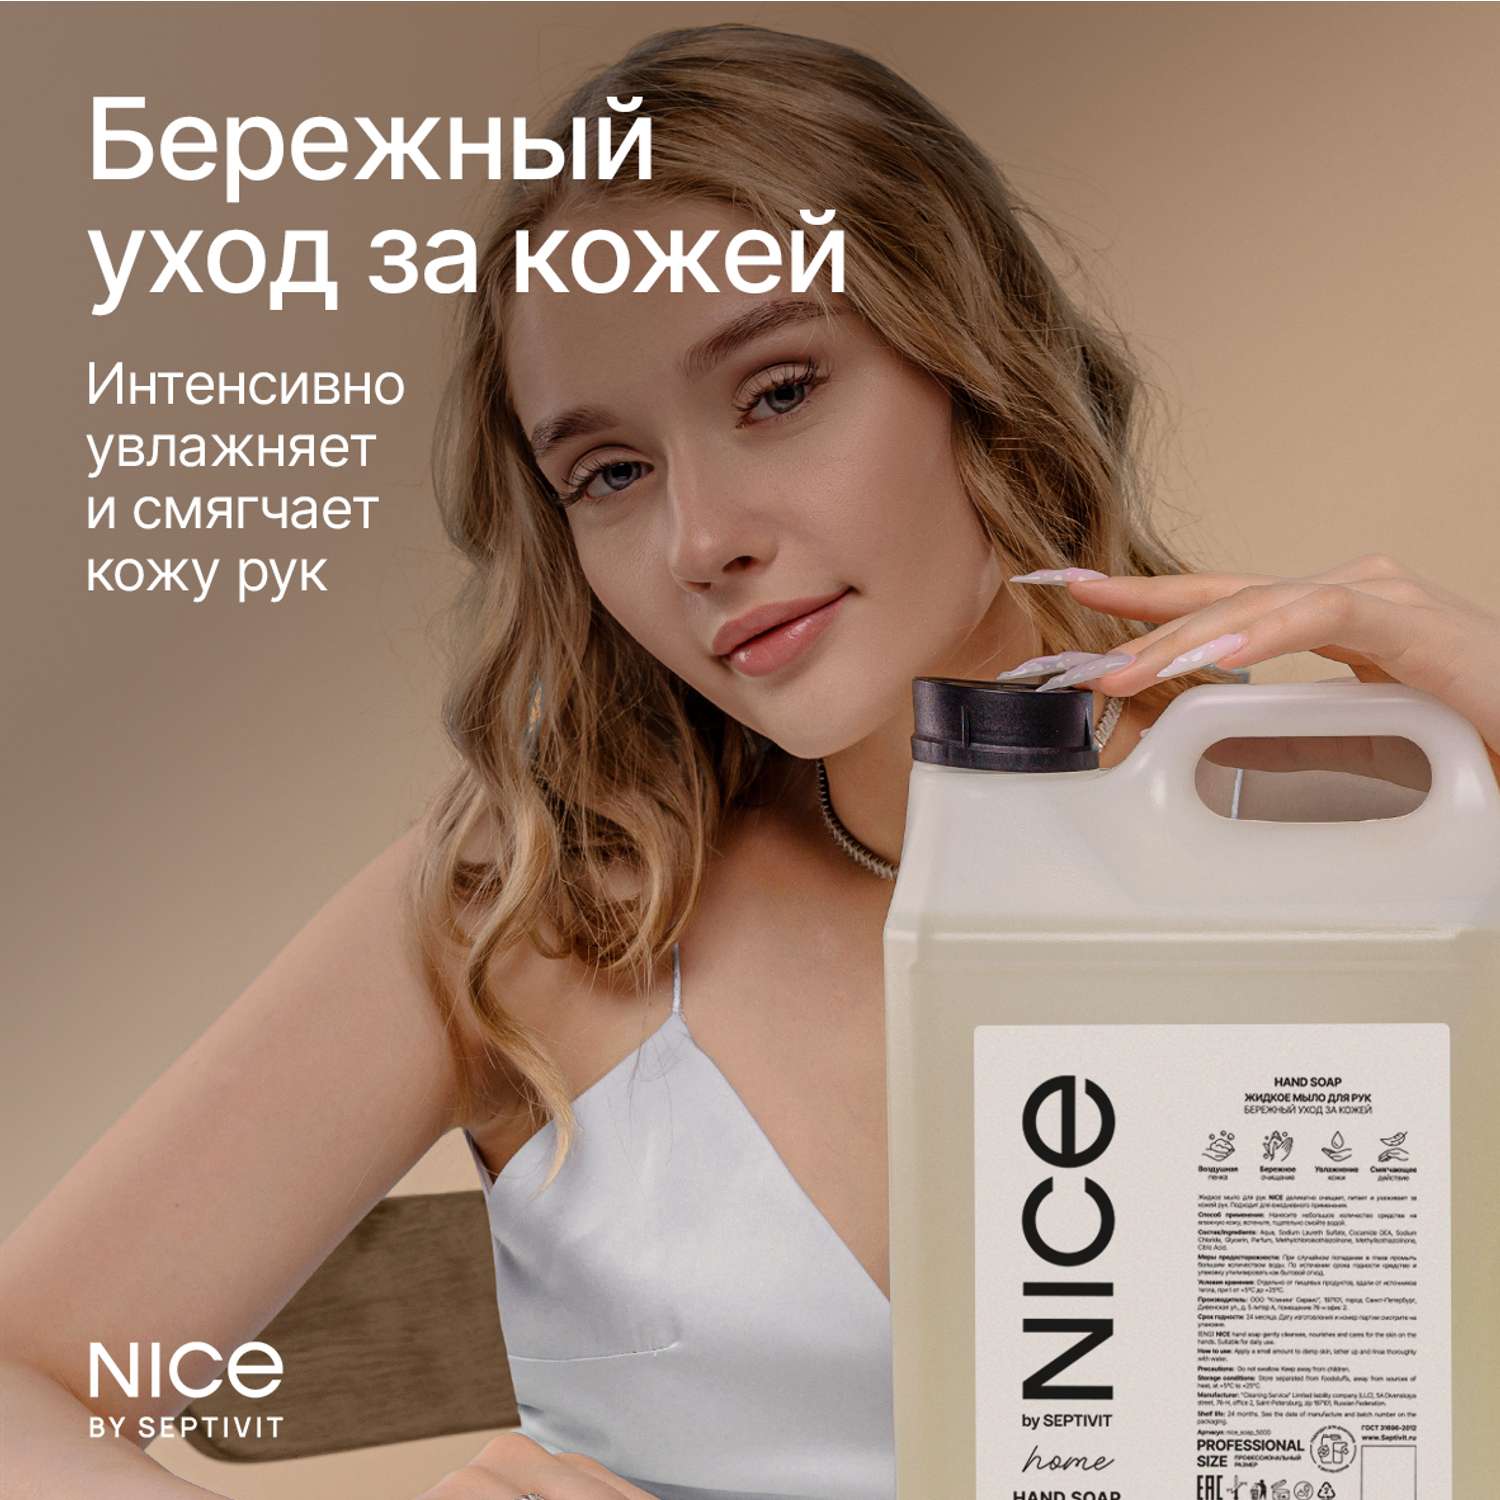 Жидкое мыло для рук NICE by Septivit с ароматом Авокадо-манго 5л - фото 6